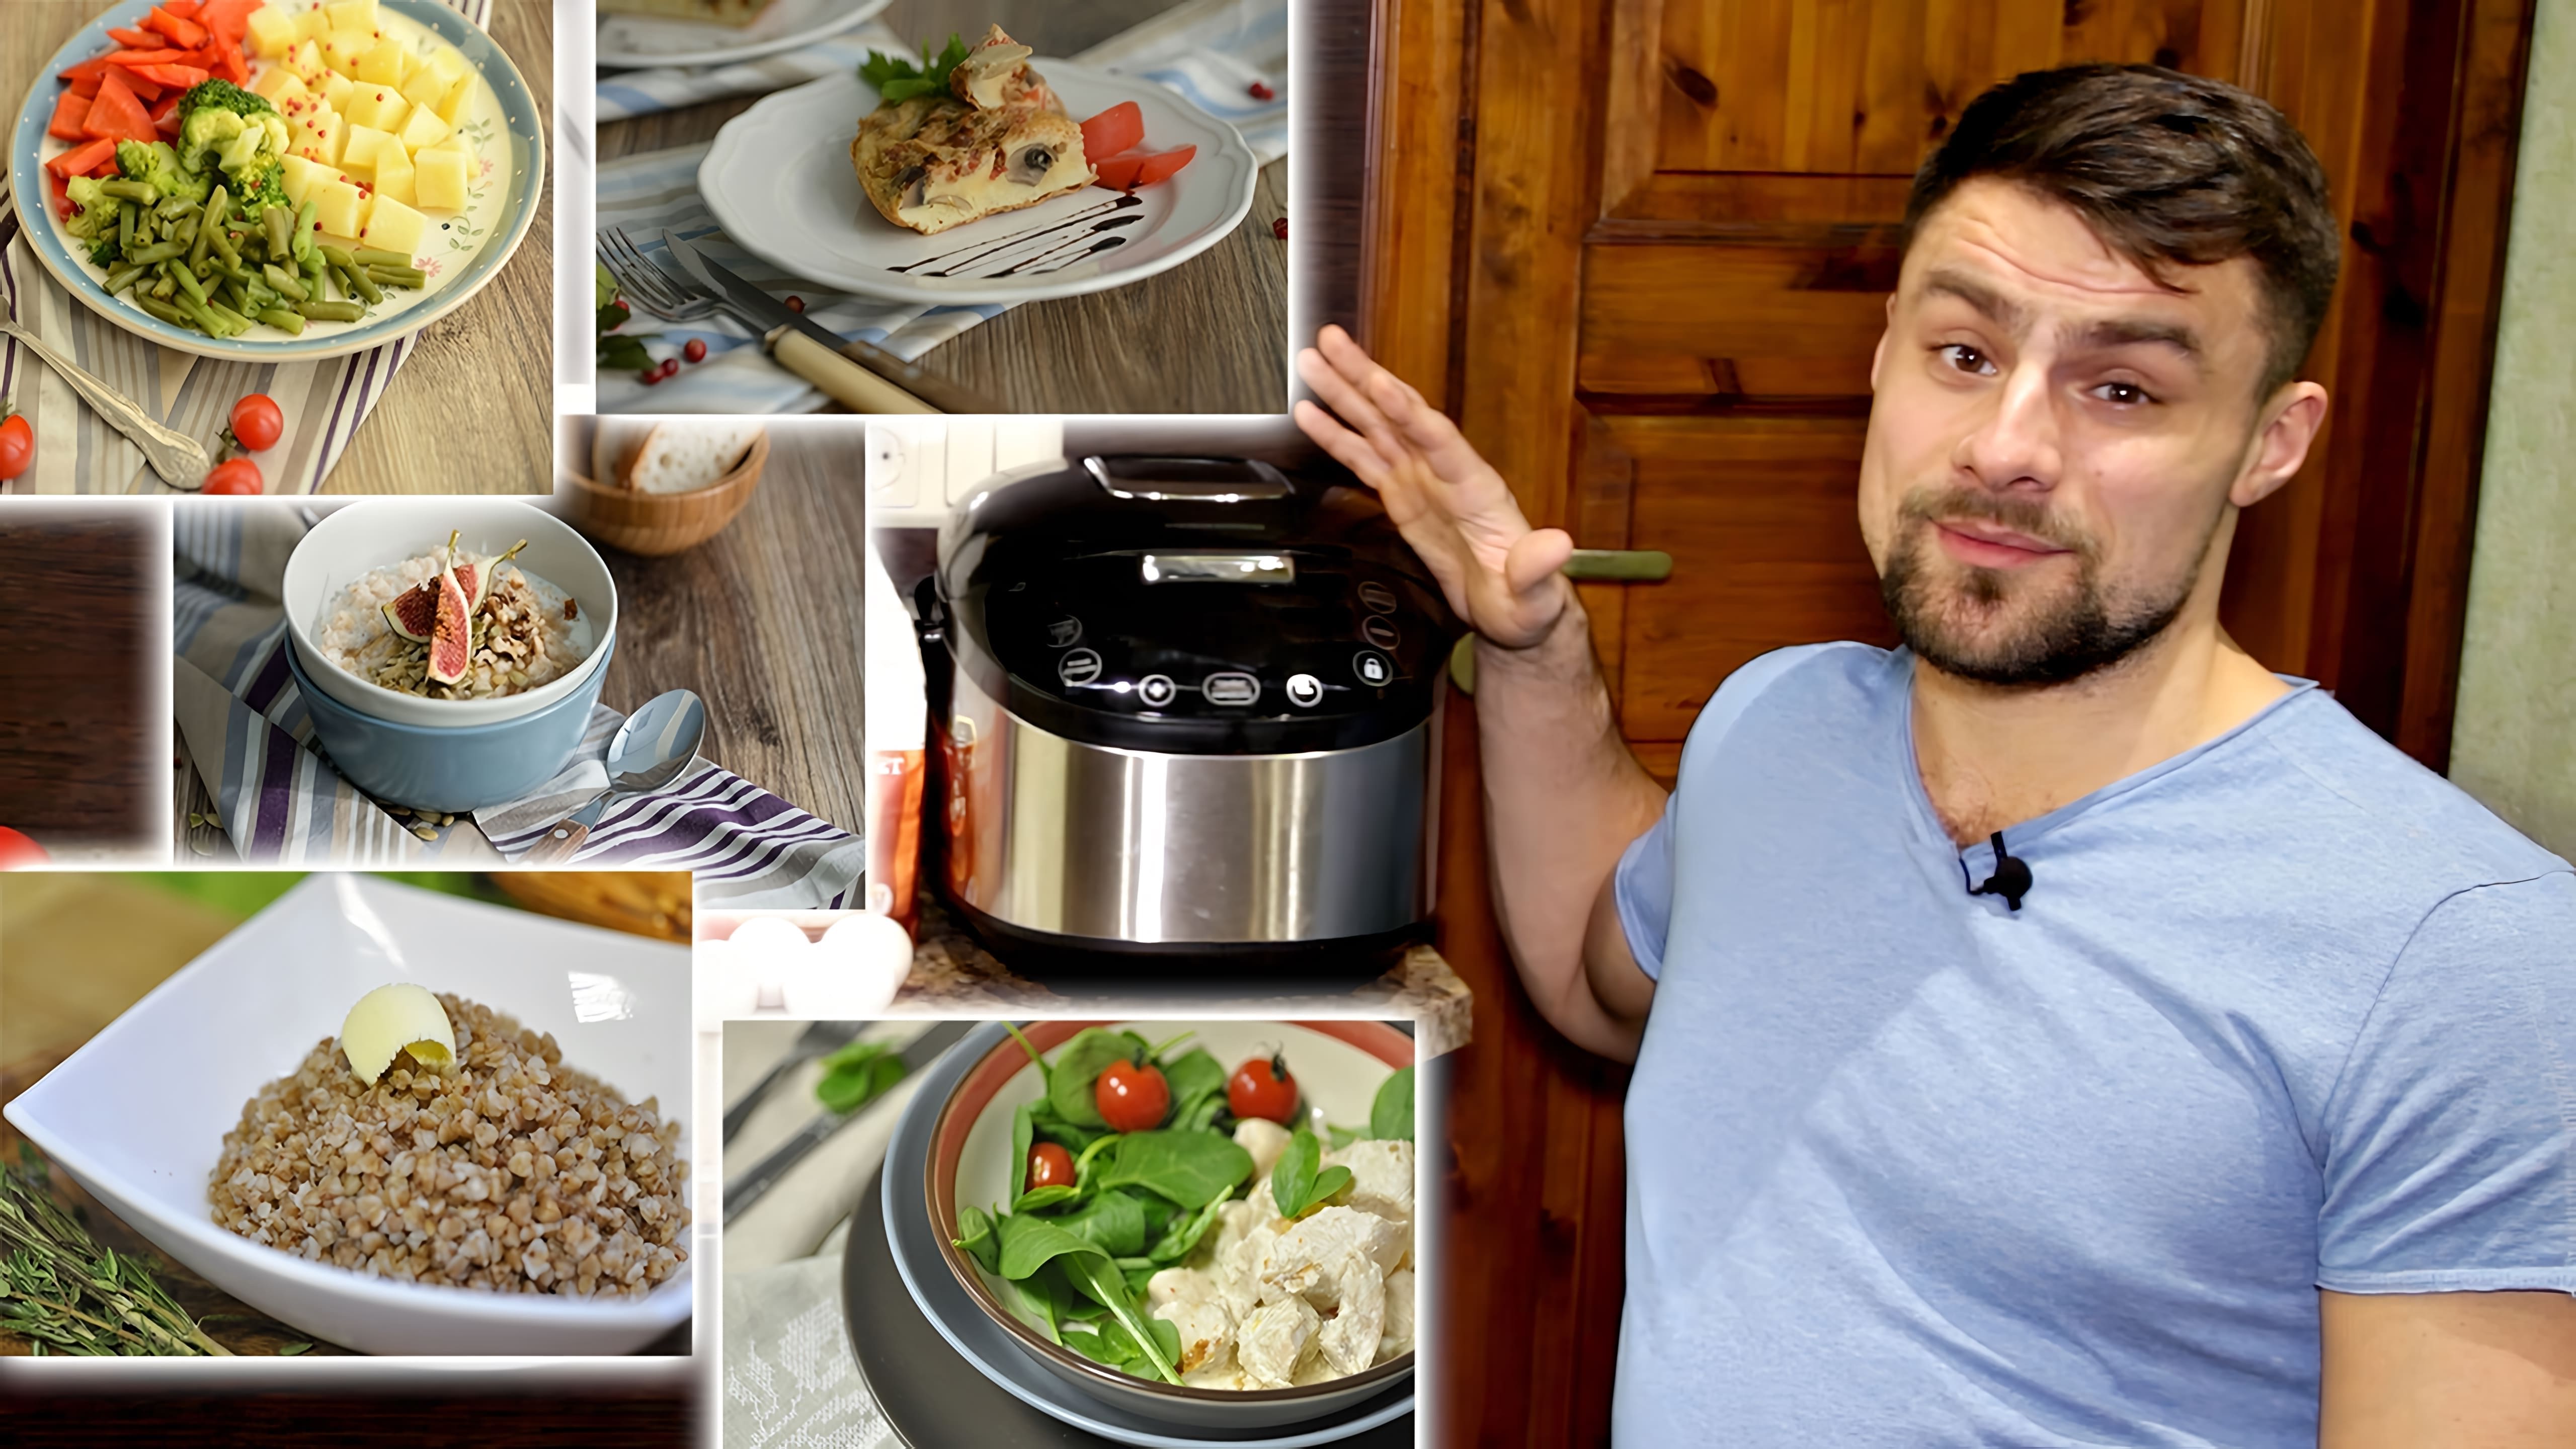 Видео как приготовить полный набор блюд на целый день - завтрак, обед и ужин - с использованием мультиварки